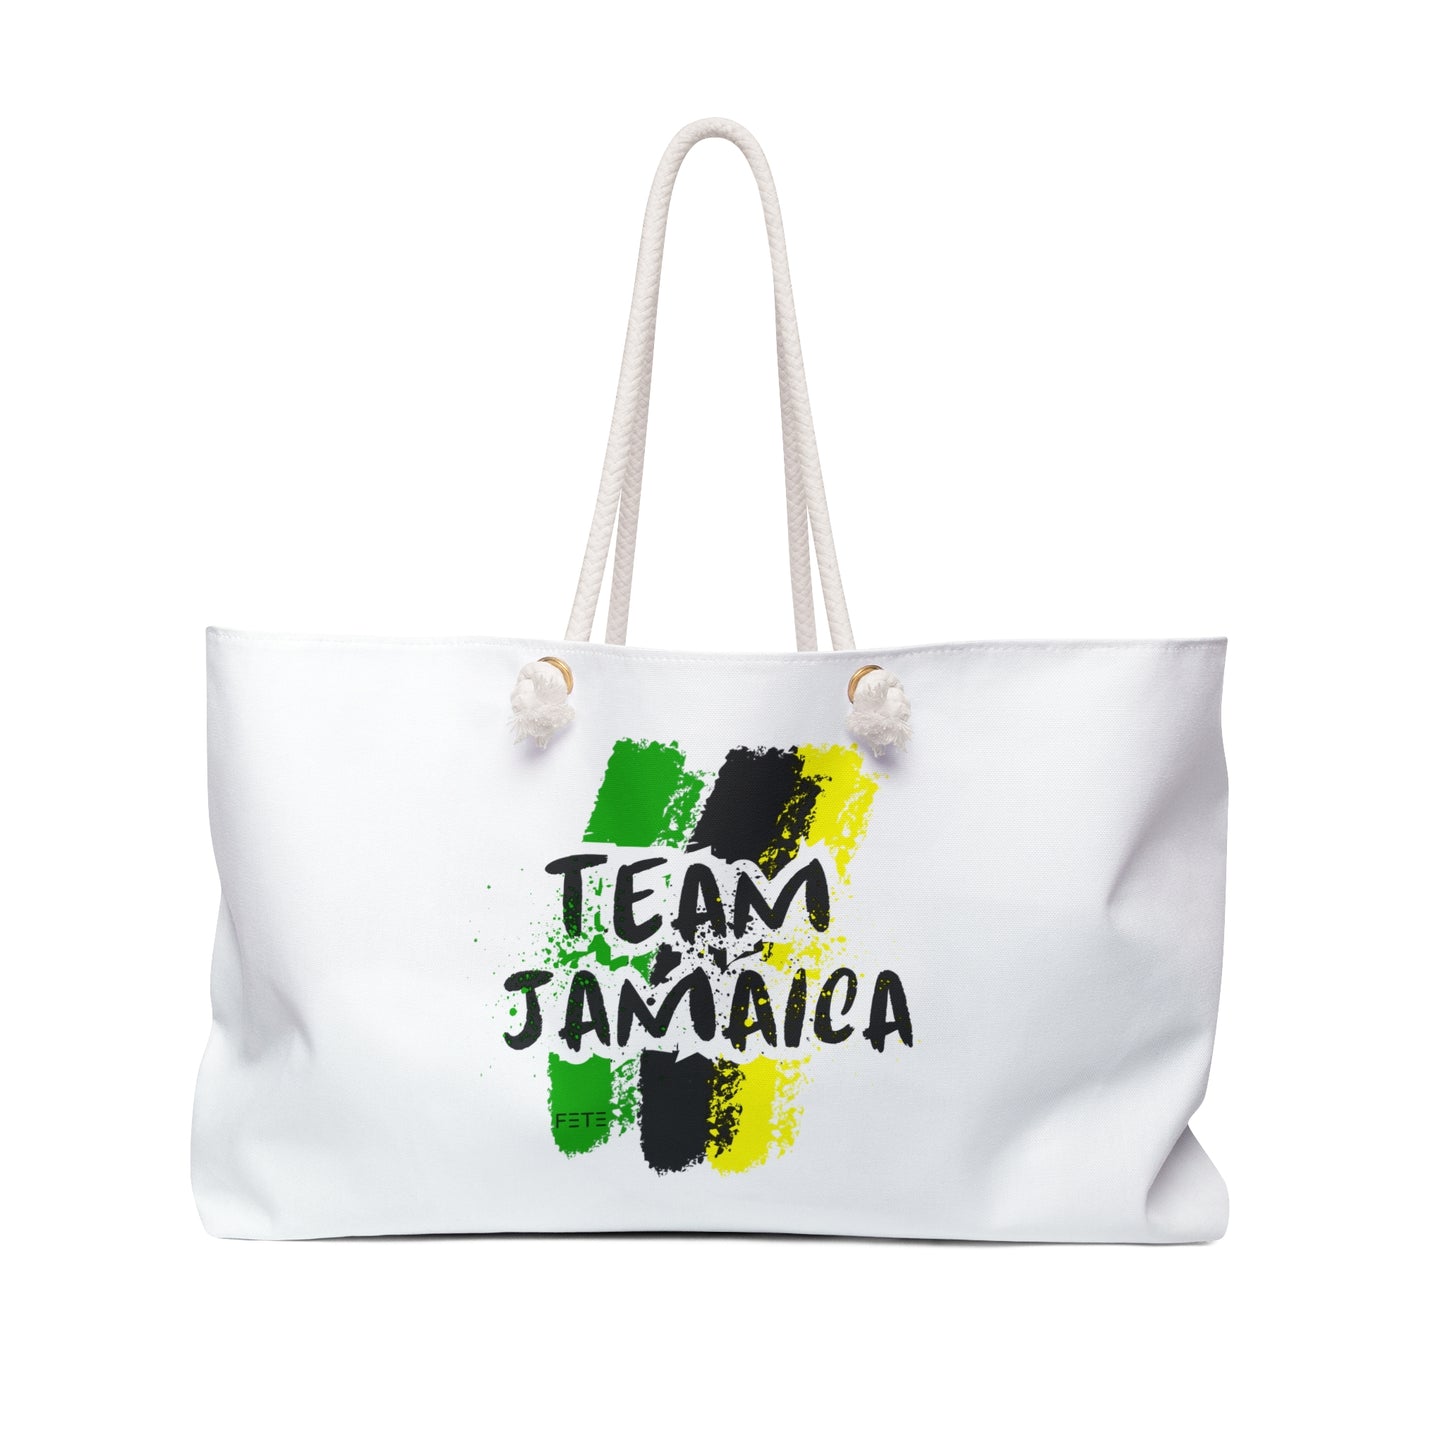 Team Jamaica Weekender Bag